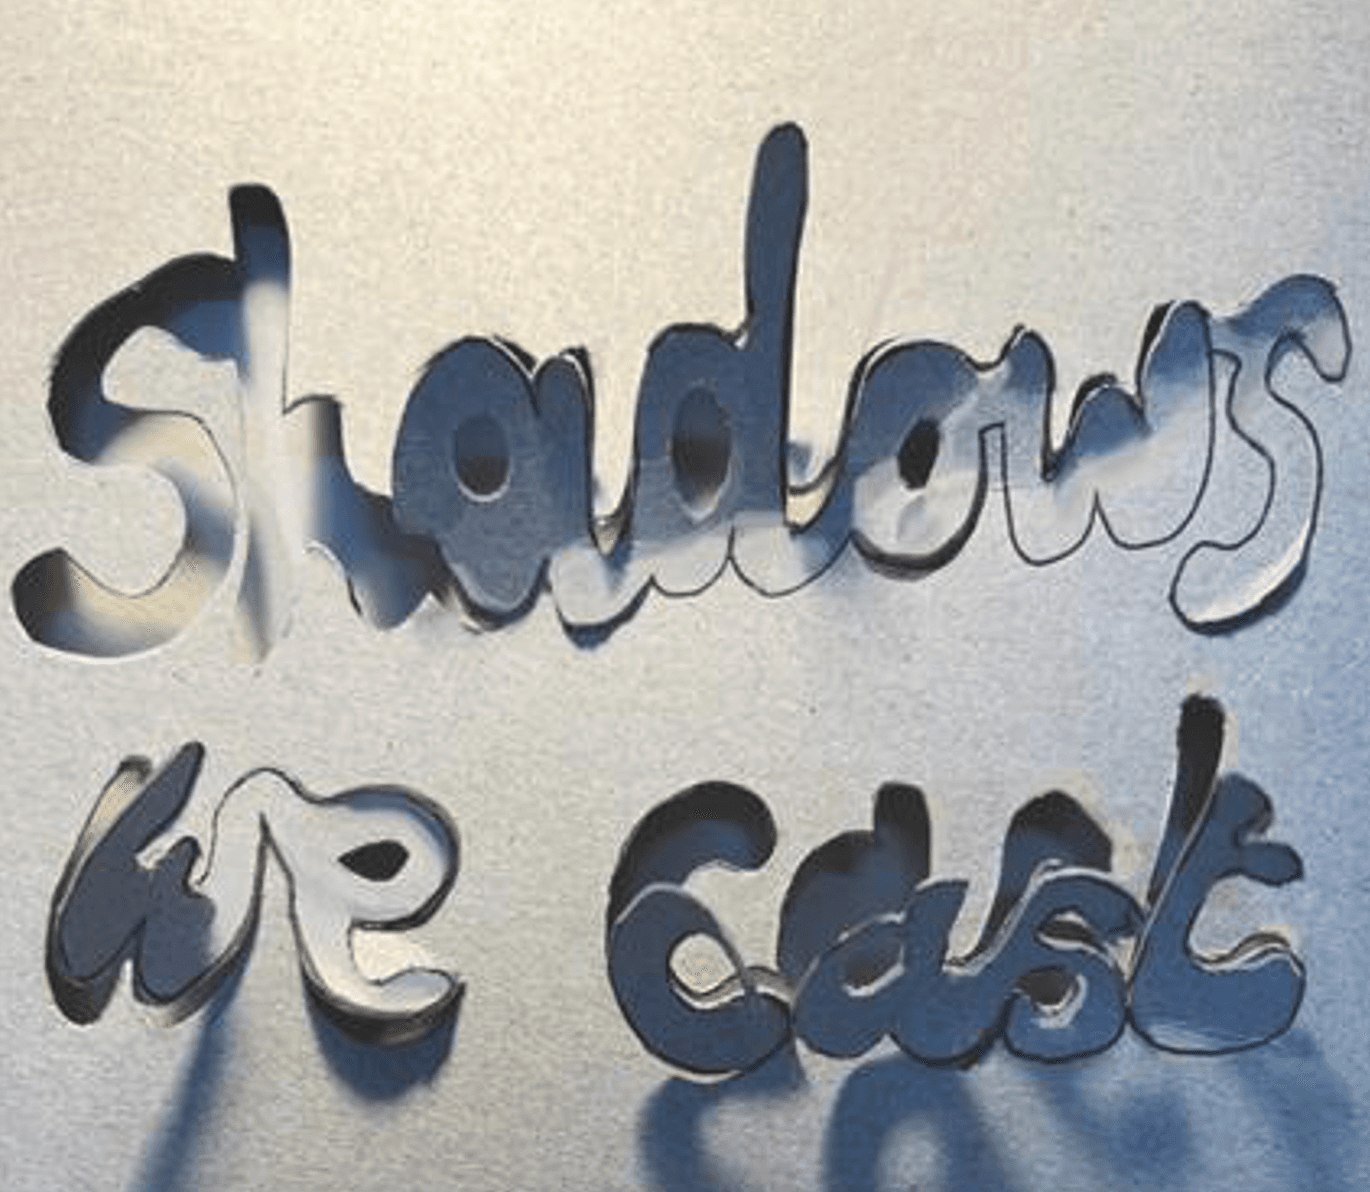 Shadows We Cast